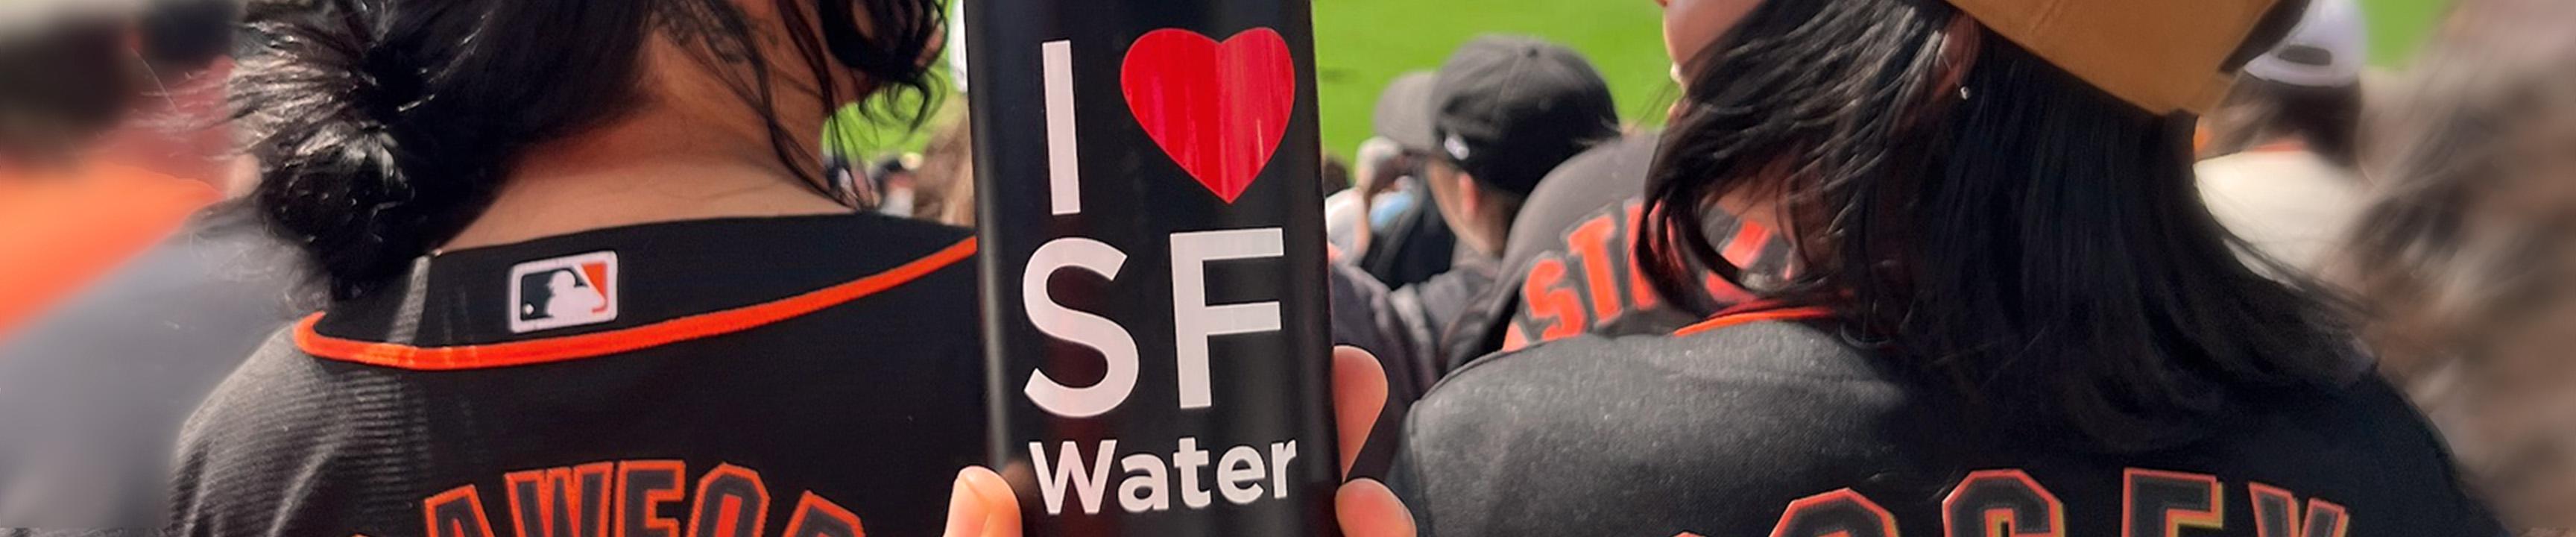 يستمتع المشجعون بلعبة Giants وزجاجة ماء مع I heart SF Water